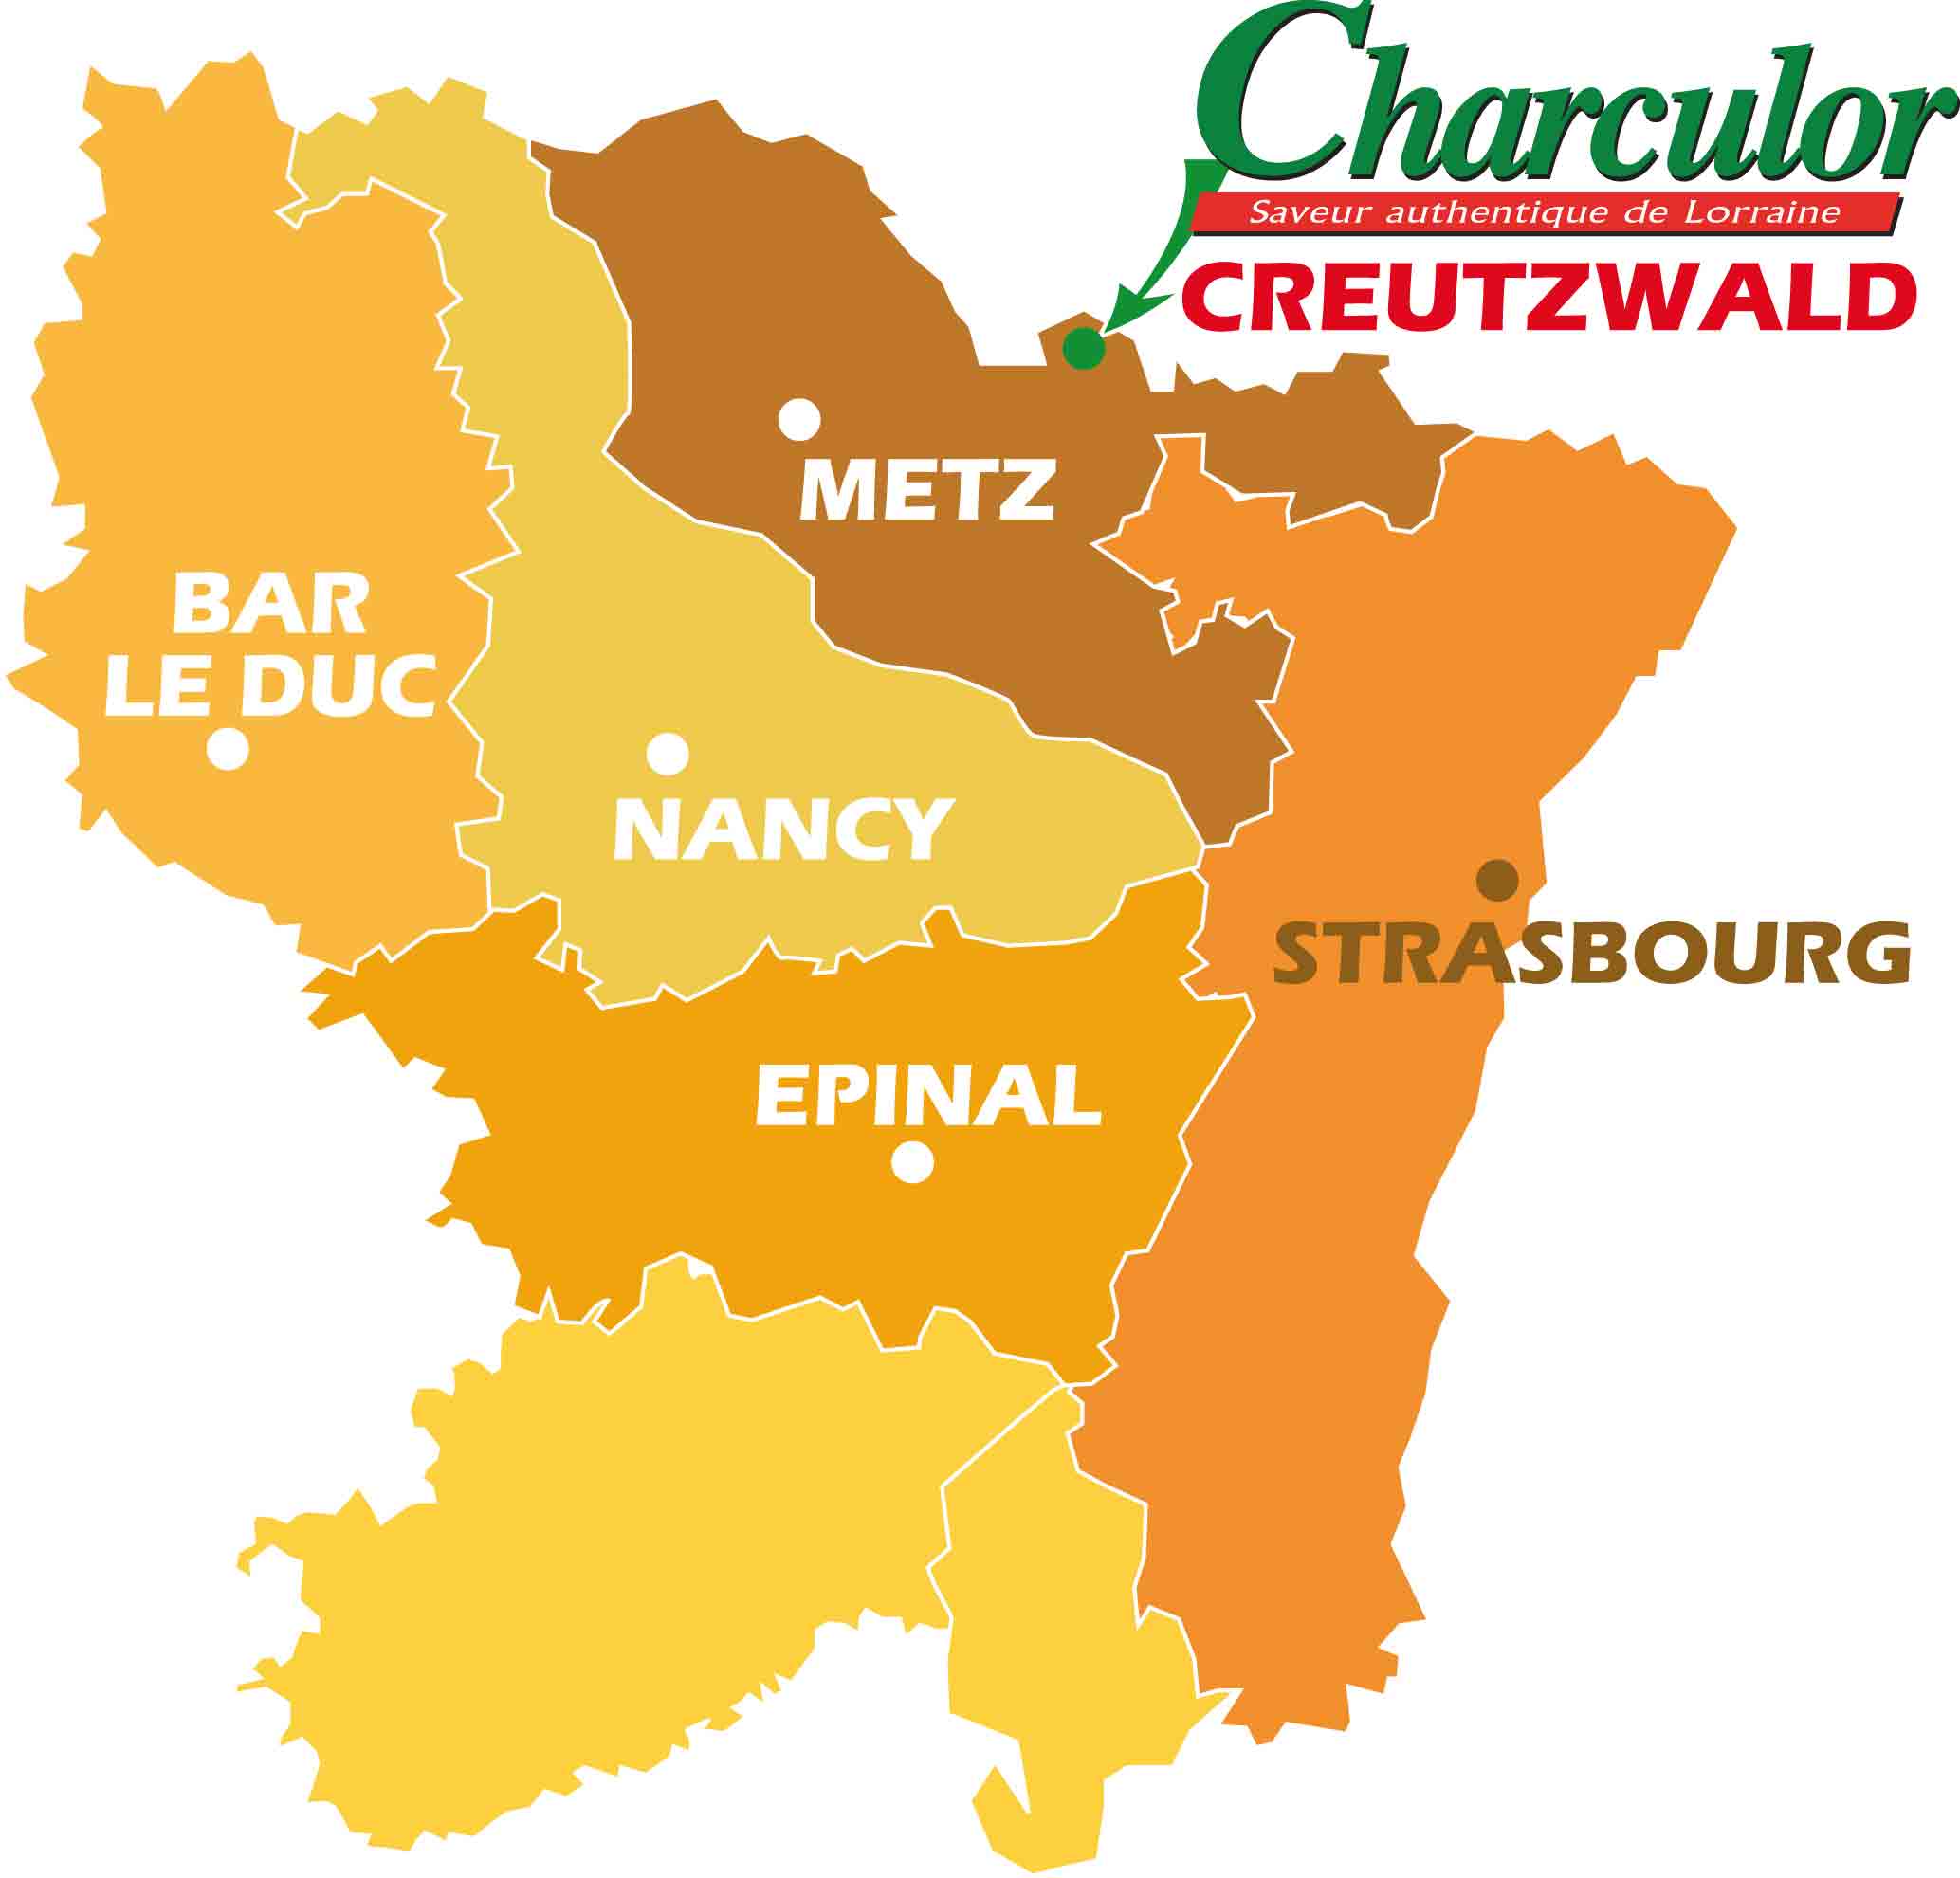 Charculor Carte Alsace Lorraine Charculor